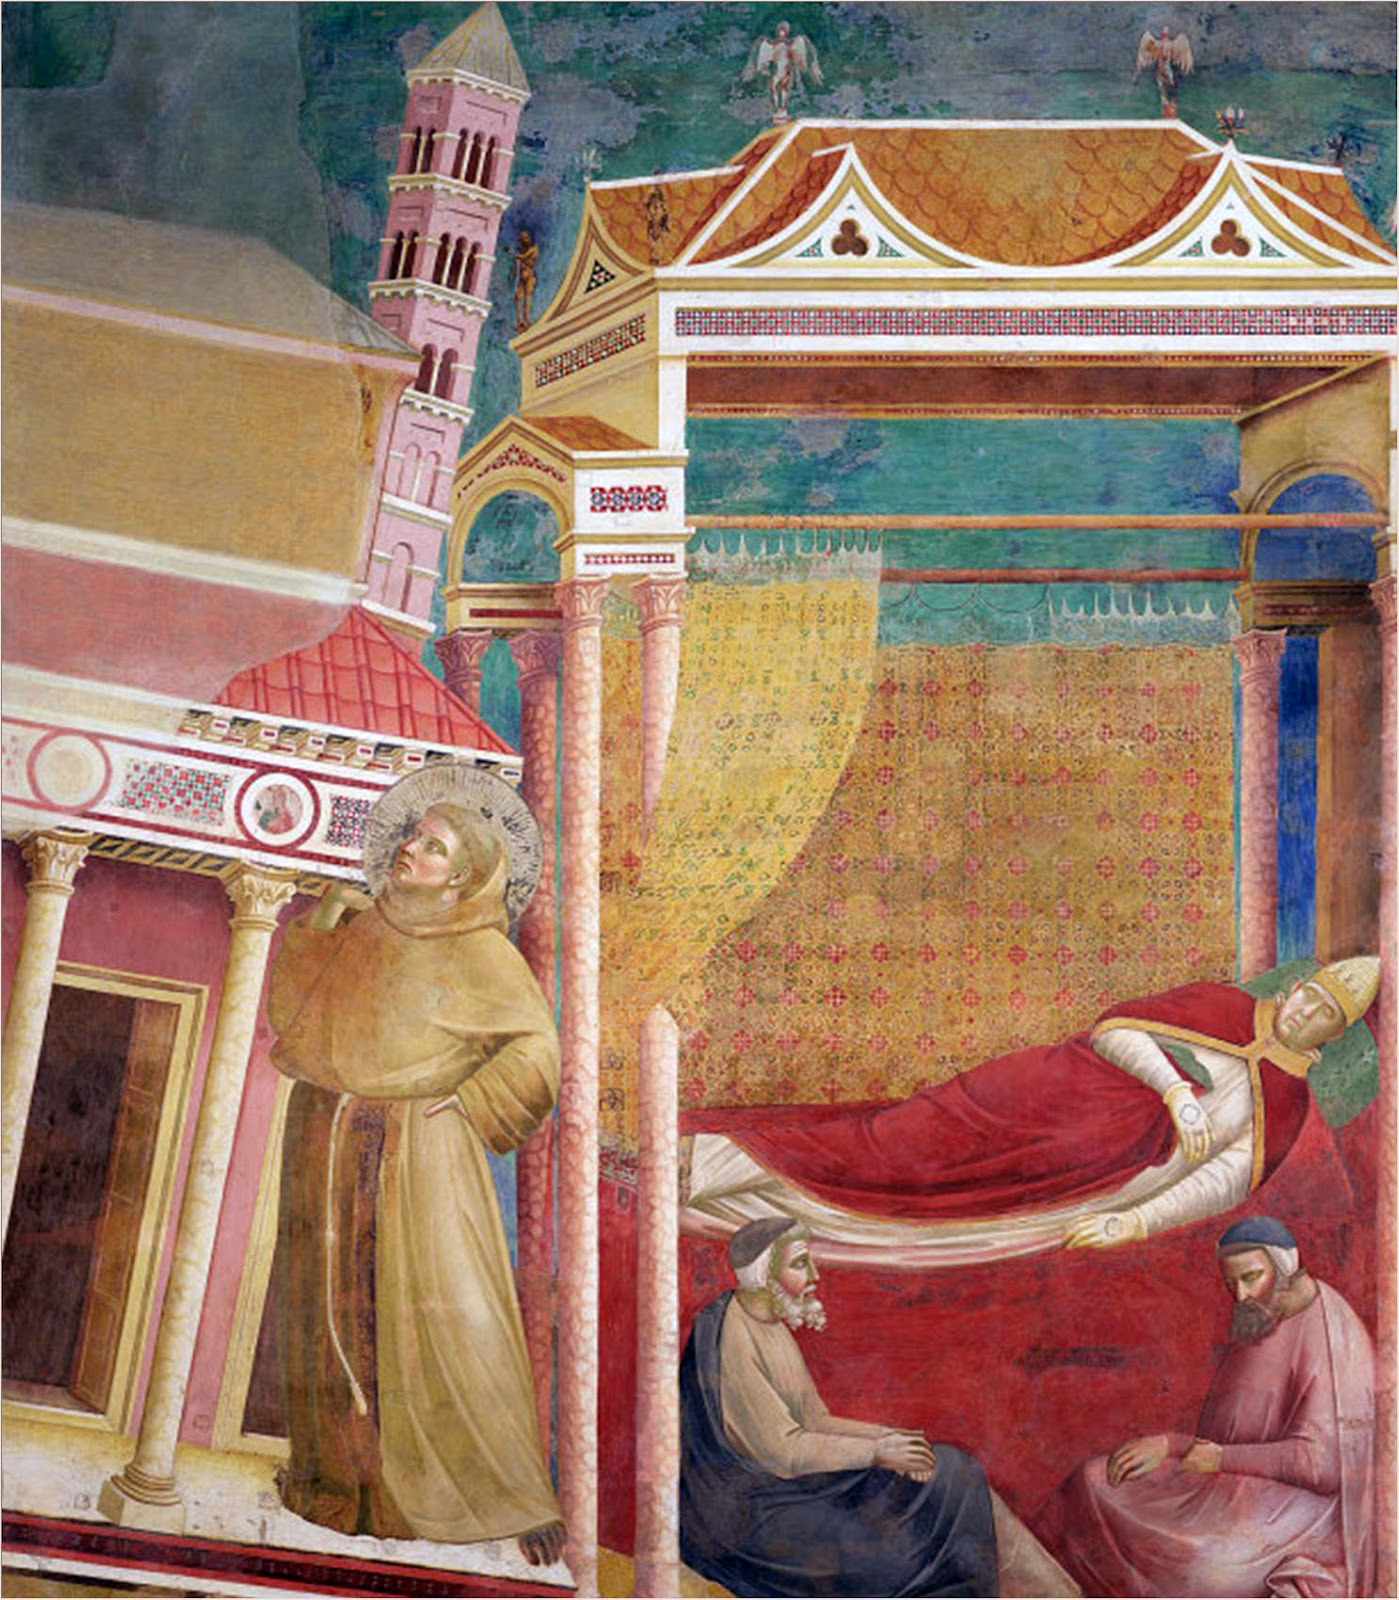 Il sogno simbolico di Innocenzo III: Francesco ripropone una Chiesa evangelica (Giotto - Assisi)